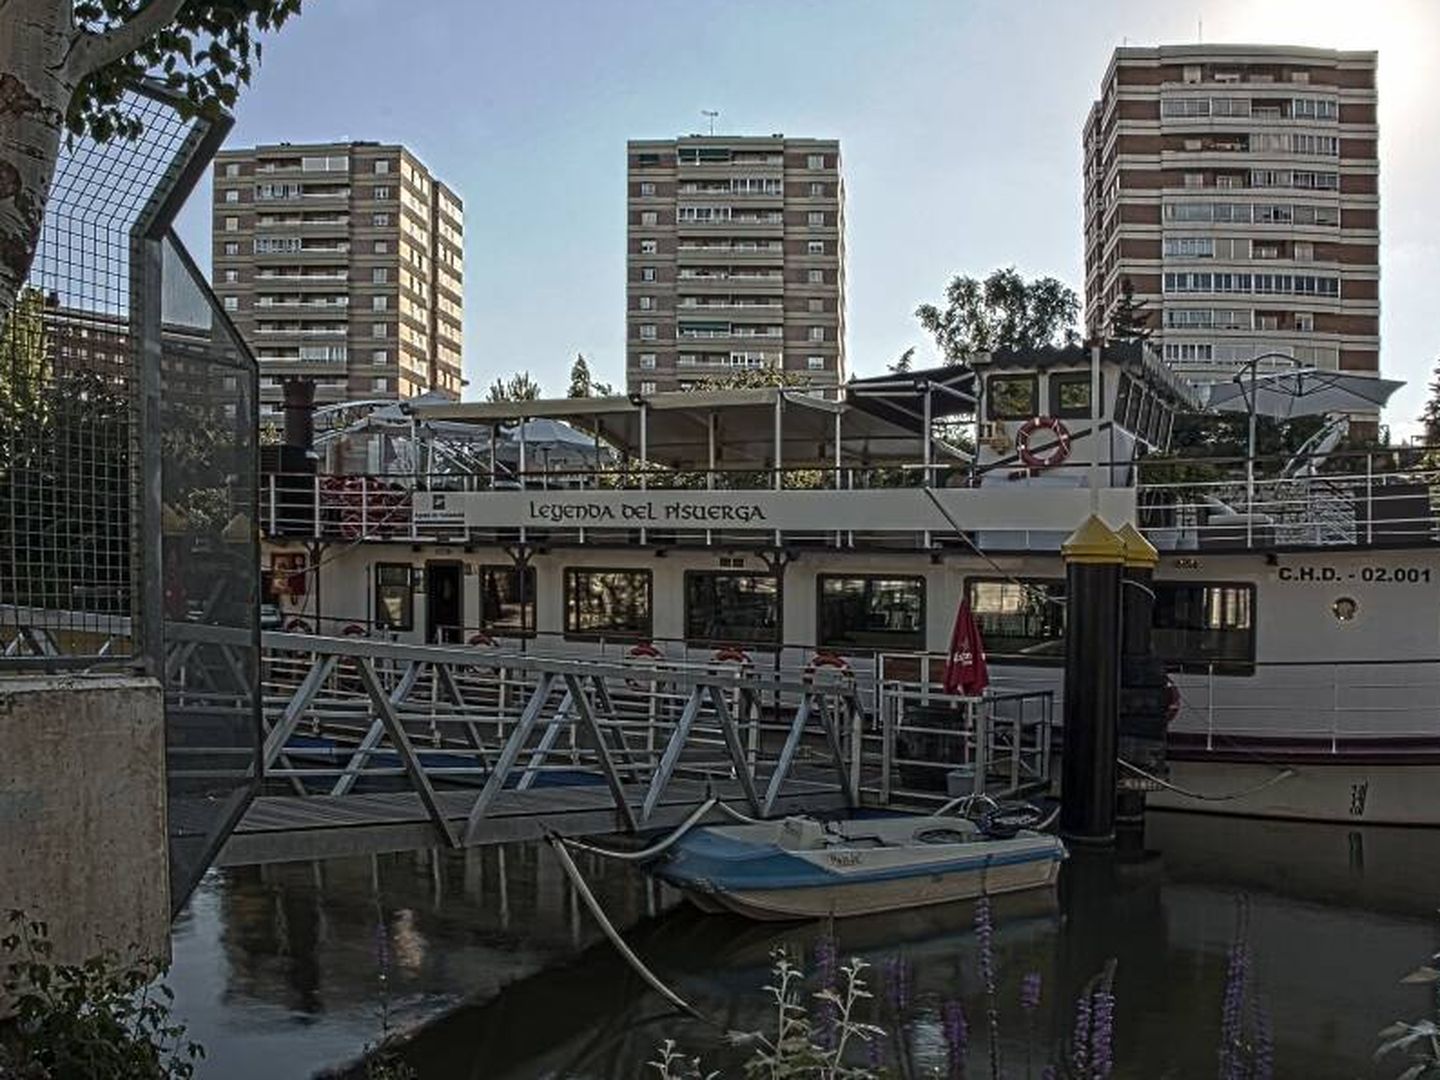 El barco de Valladolid, una ciudad de interior con playa artificial. (La Leyenda del Pisuerga)